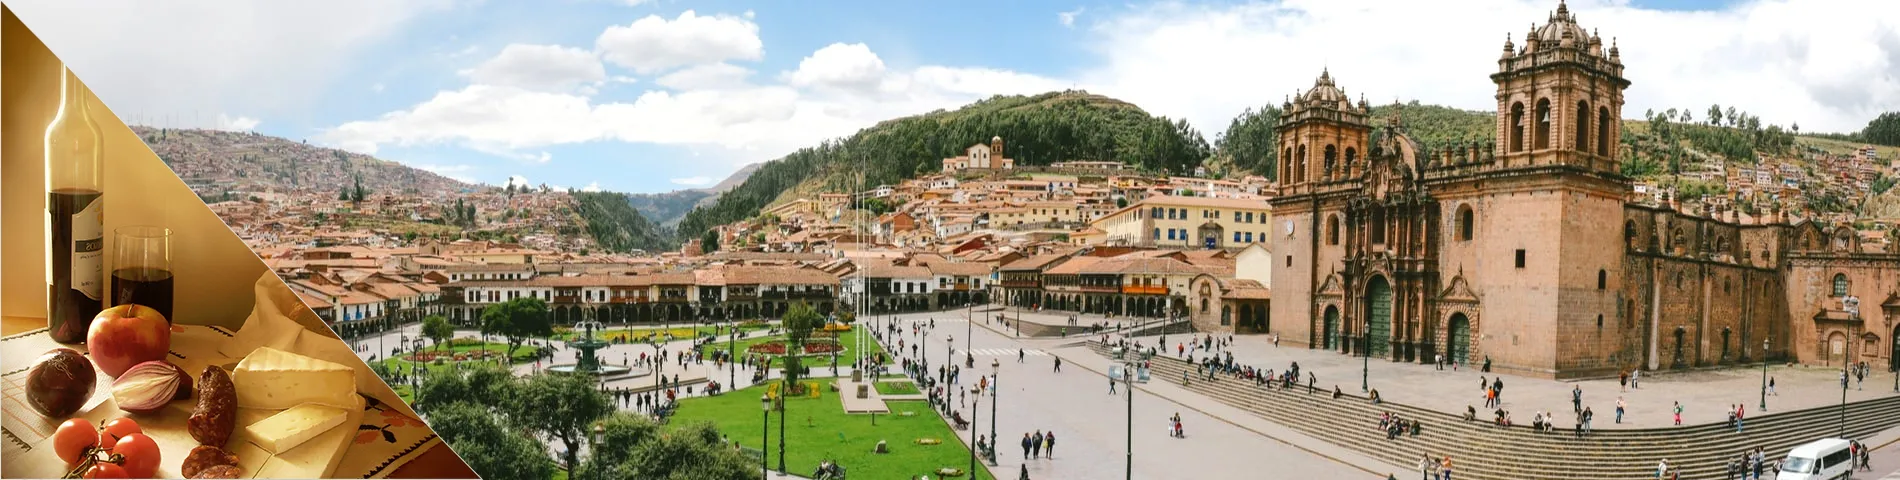 กุสโก (Cuzco) - ภาษาสเปนและวัฒนธรรม